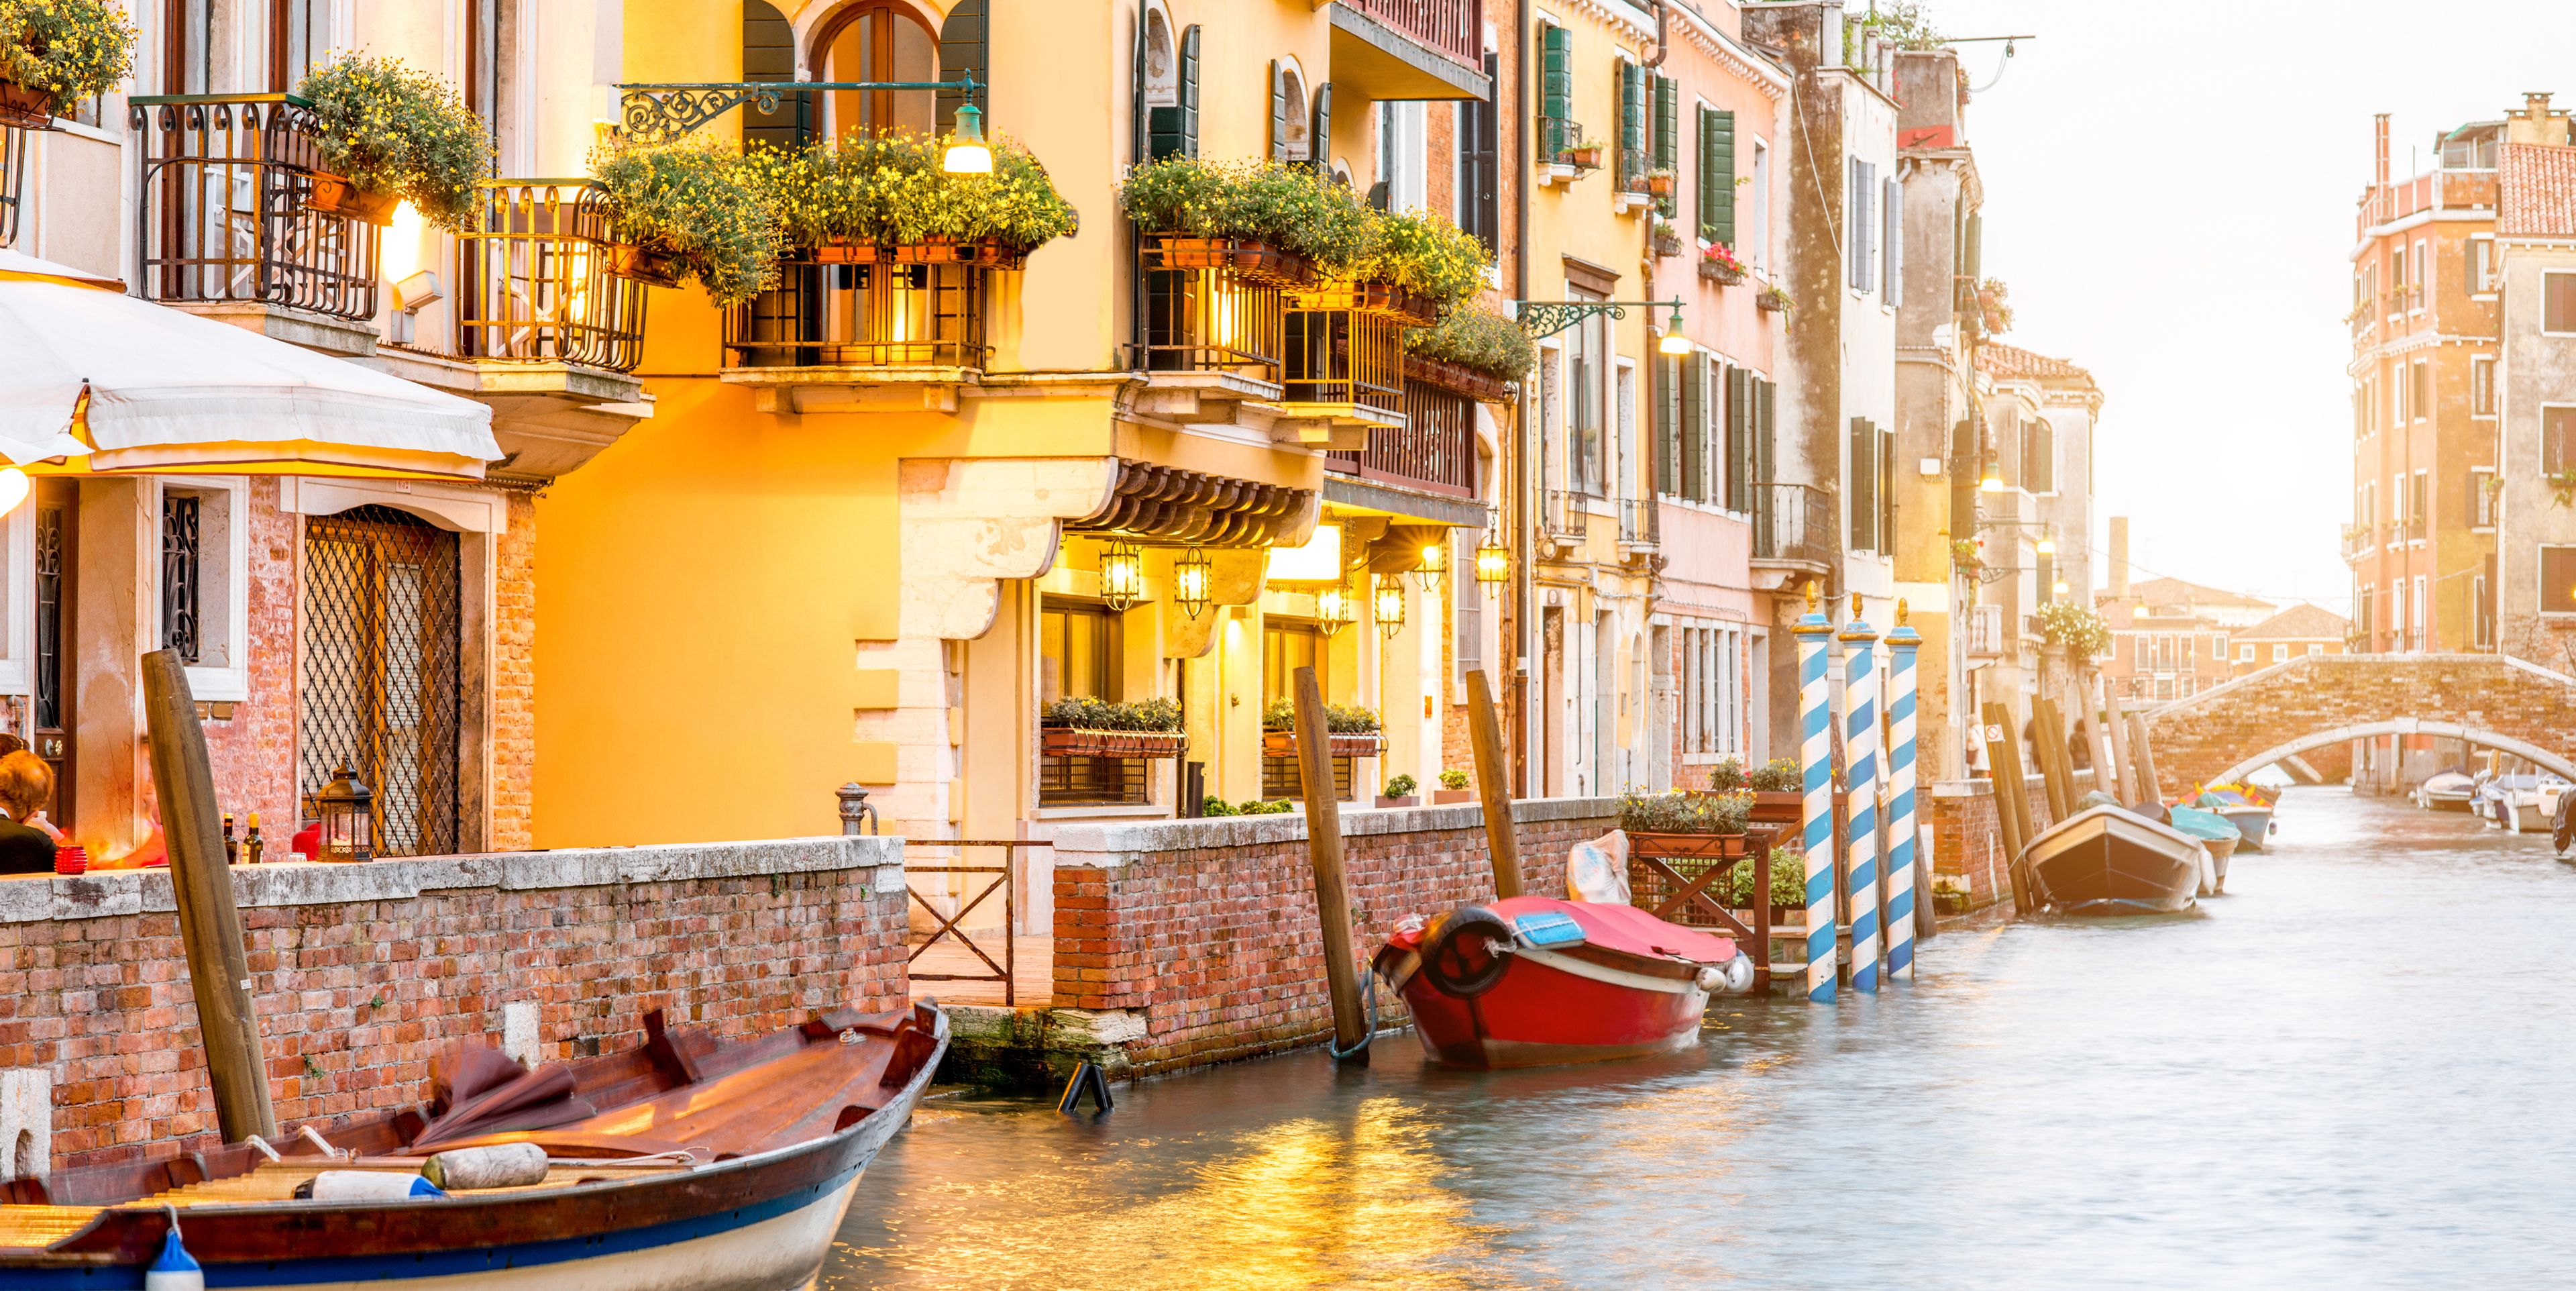 Warm angeleuchtete Häuser in Venedig am Wasser